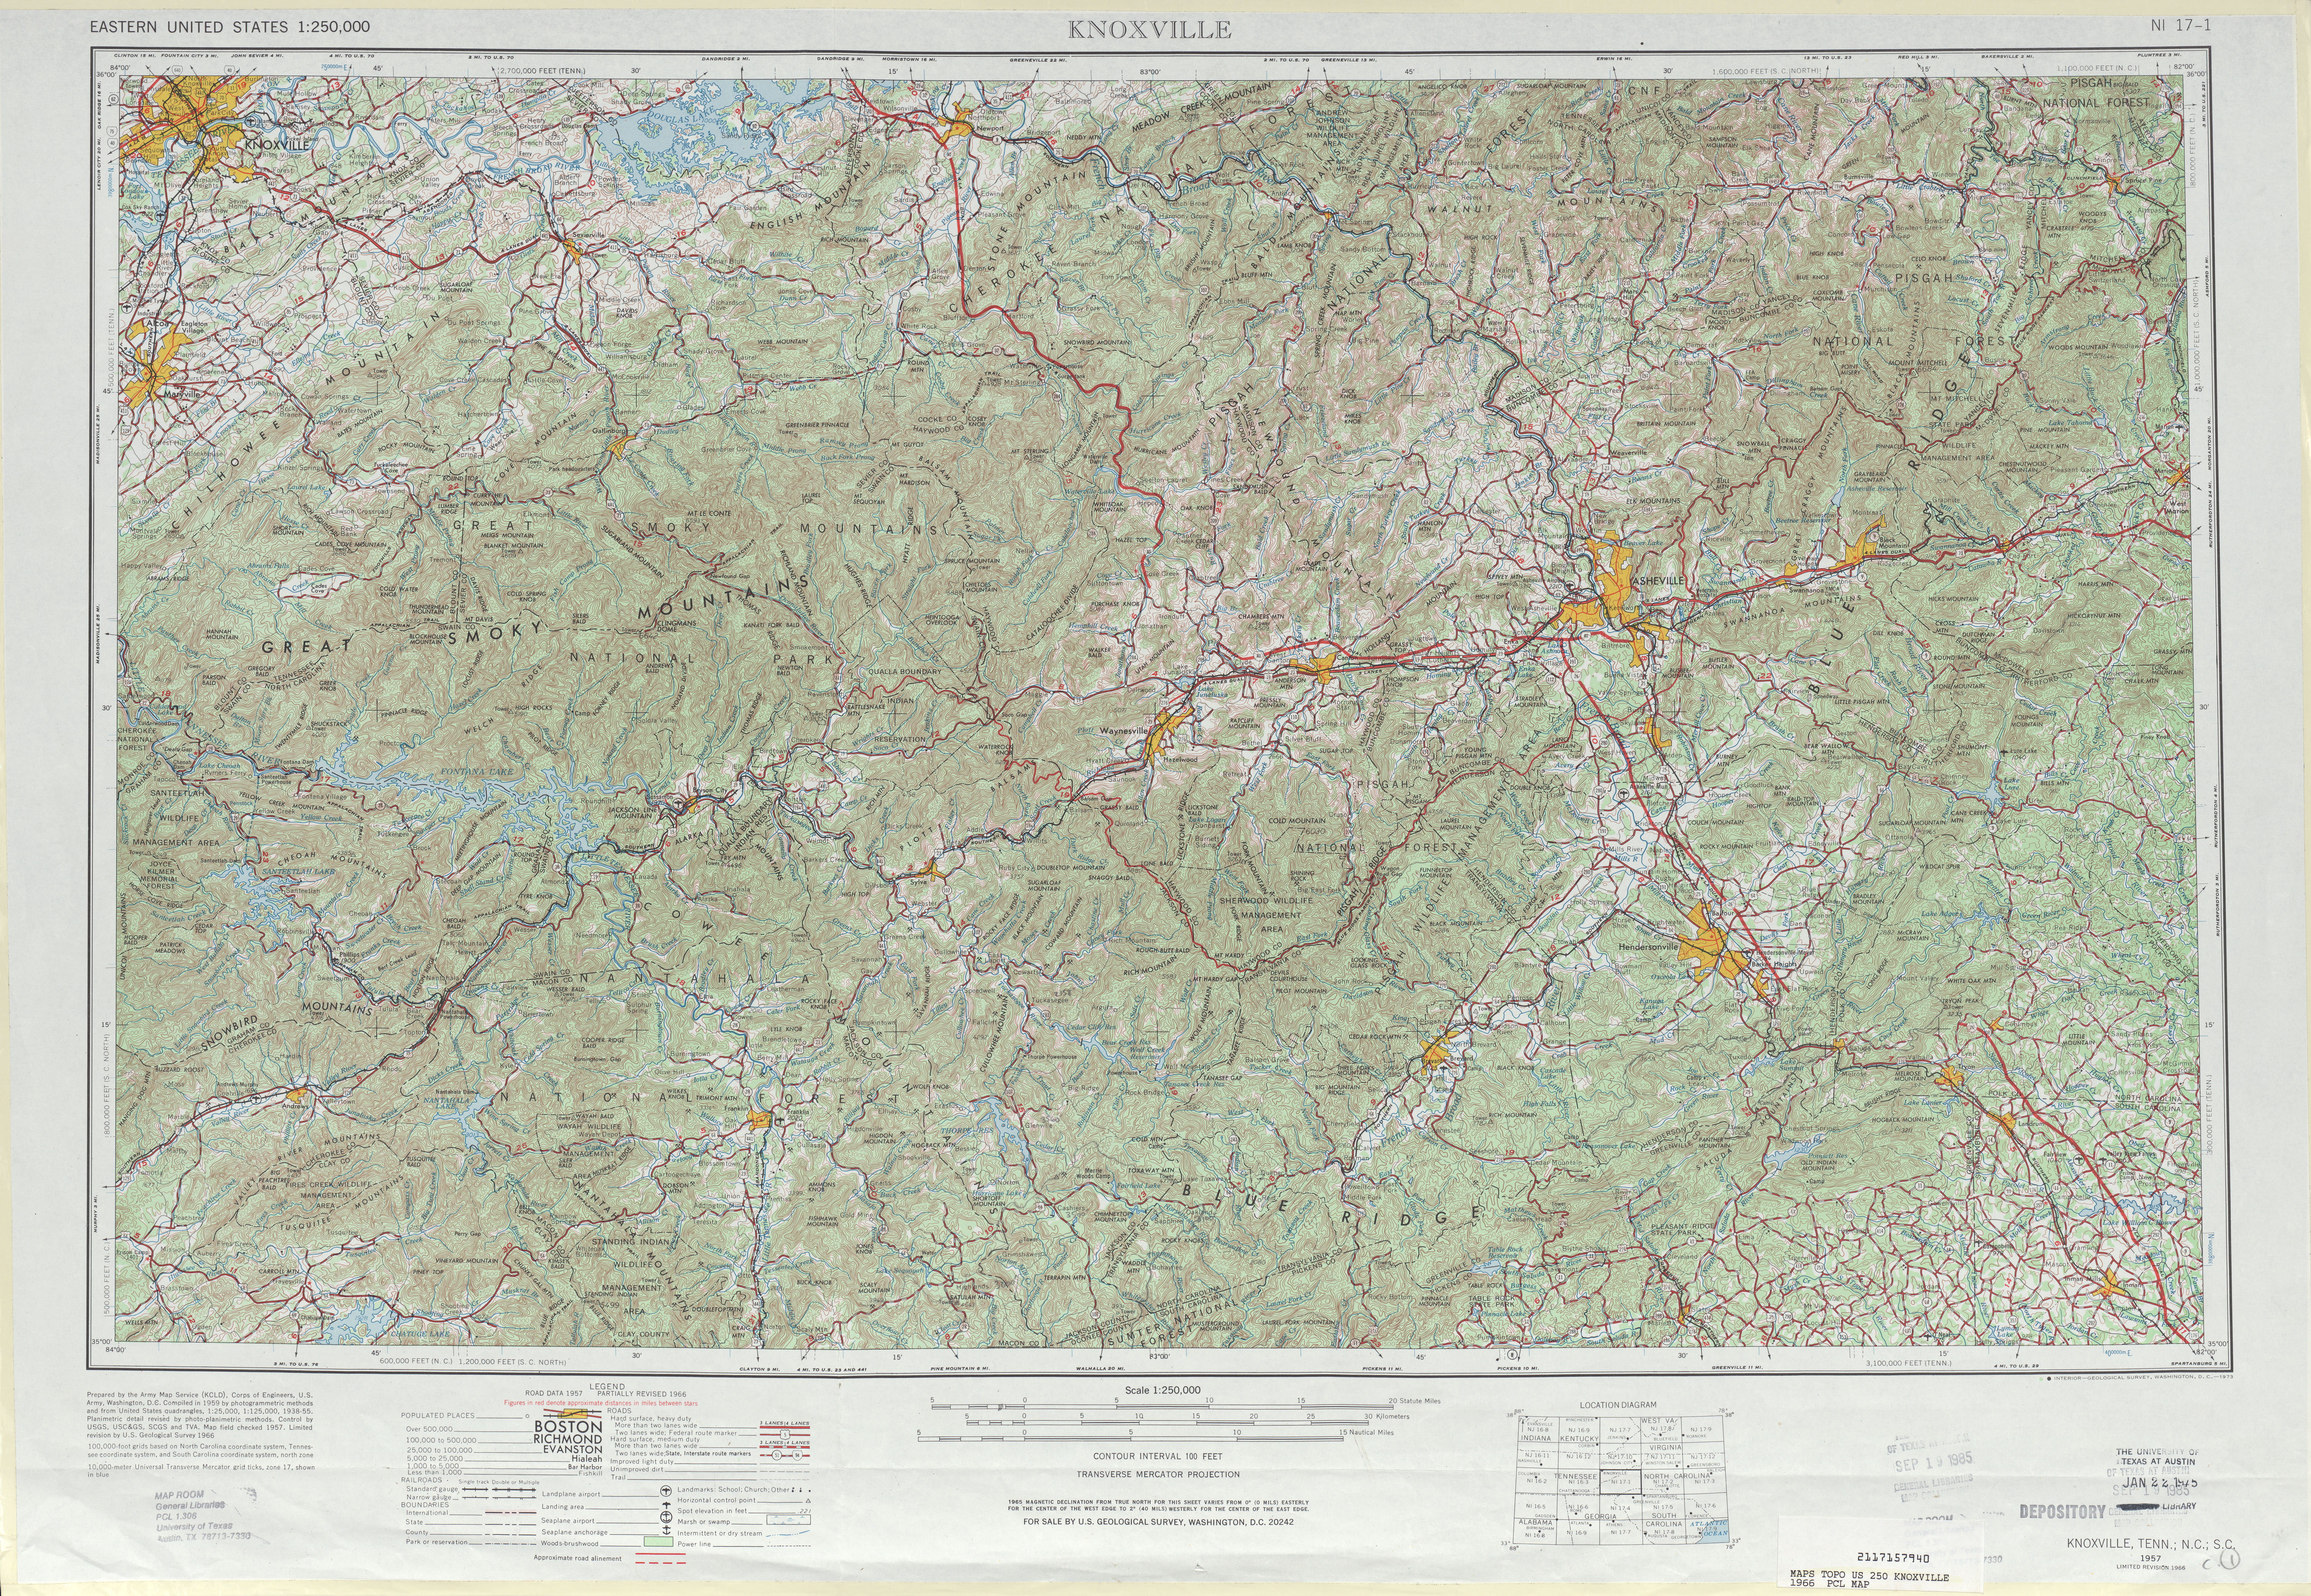 Hoja Knoxville del Mapa Topográfico de los Estados Unidos 1966